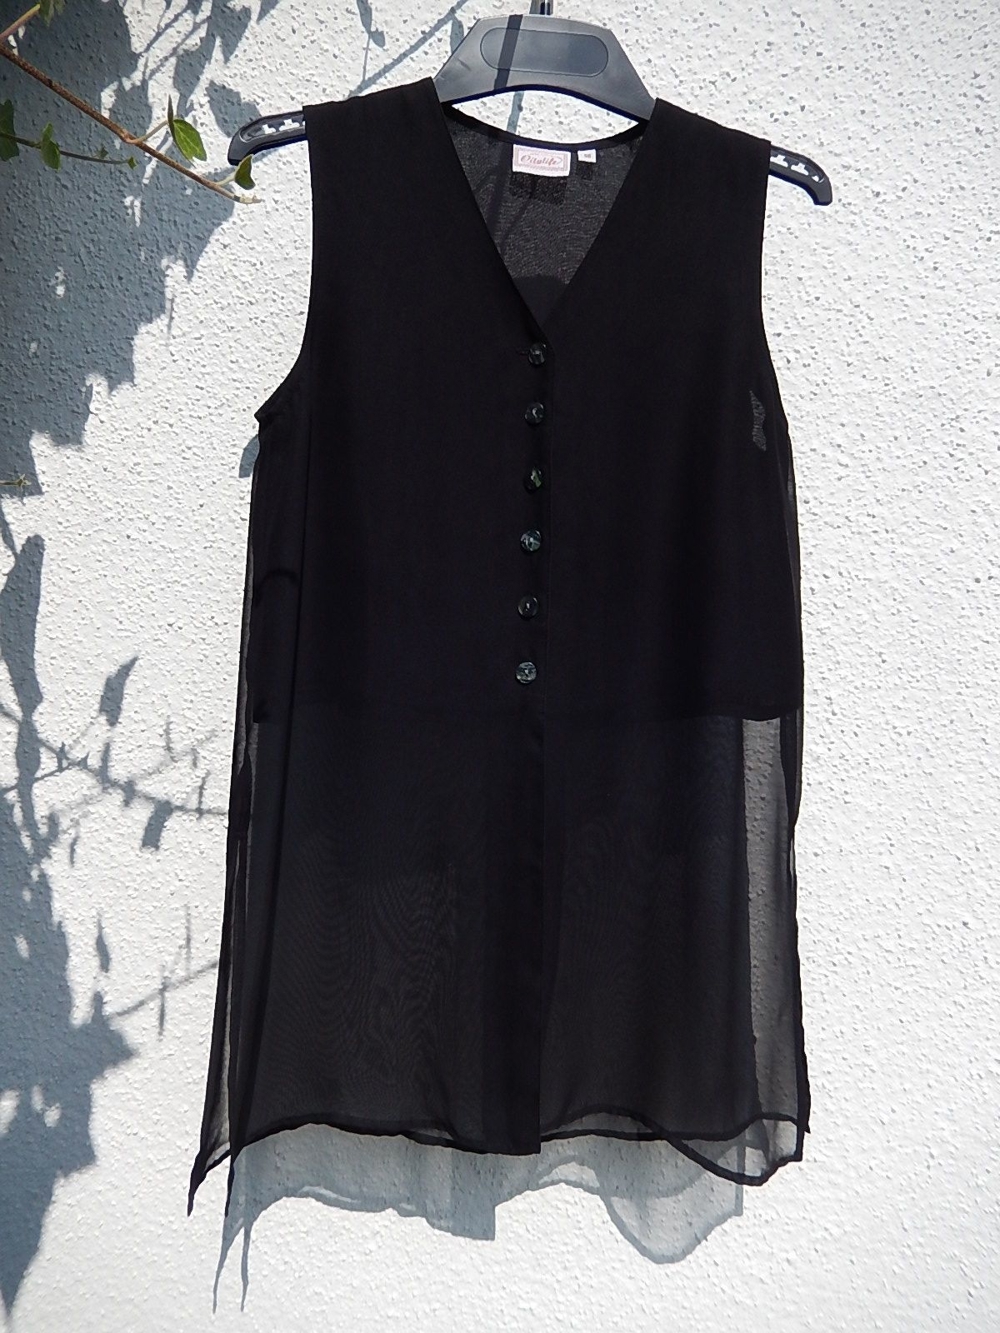 Halbtransparente schwarze Bluse oder leichtes Sommerkleid Gr. 38